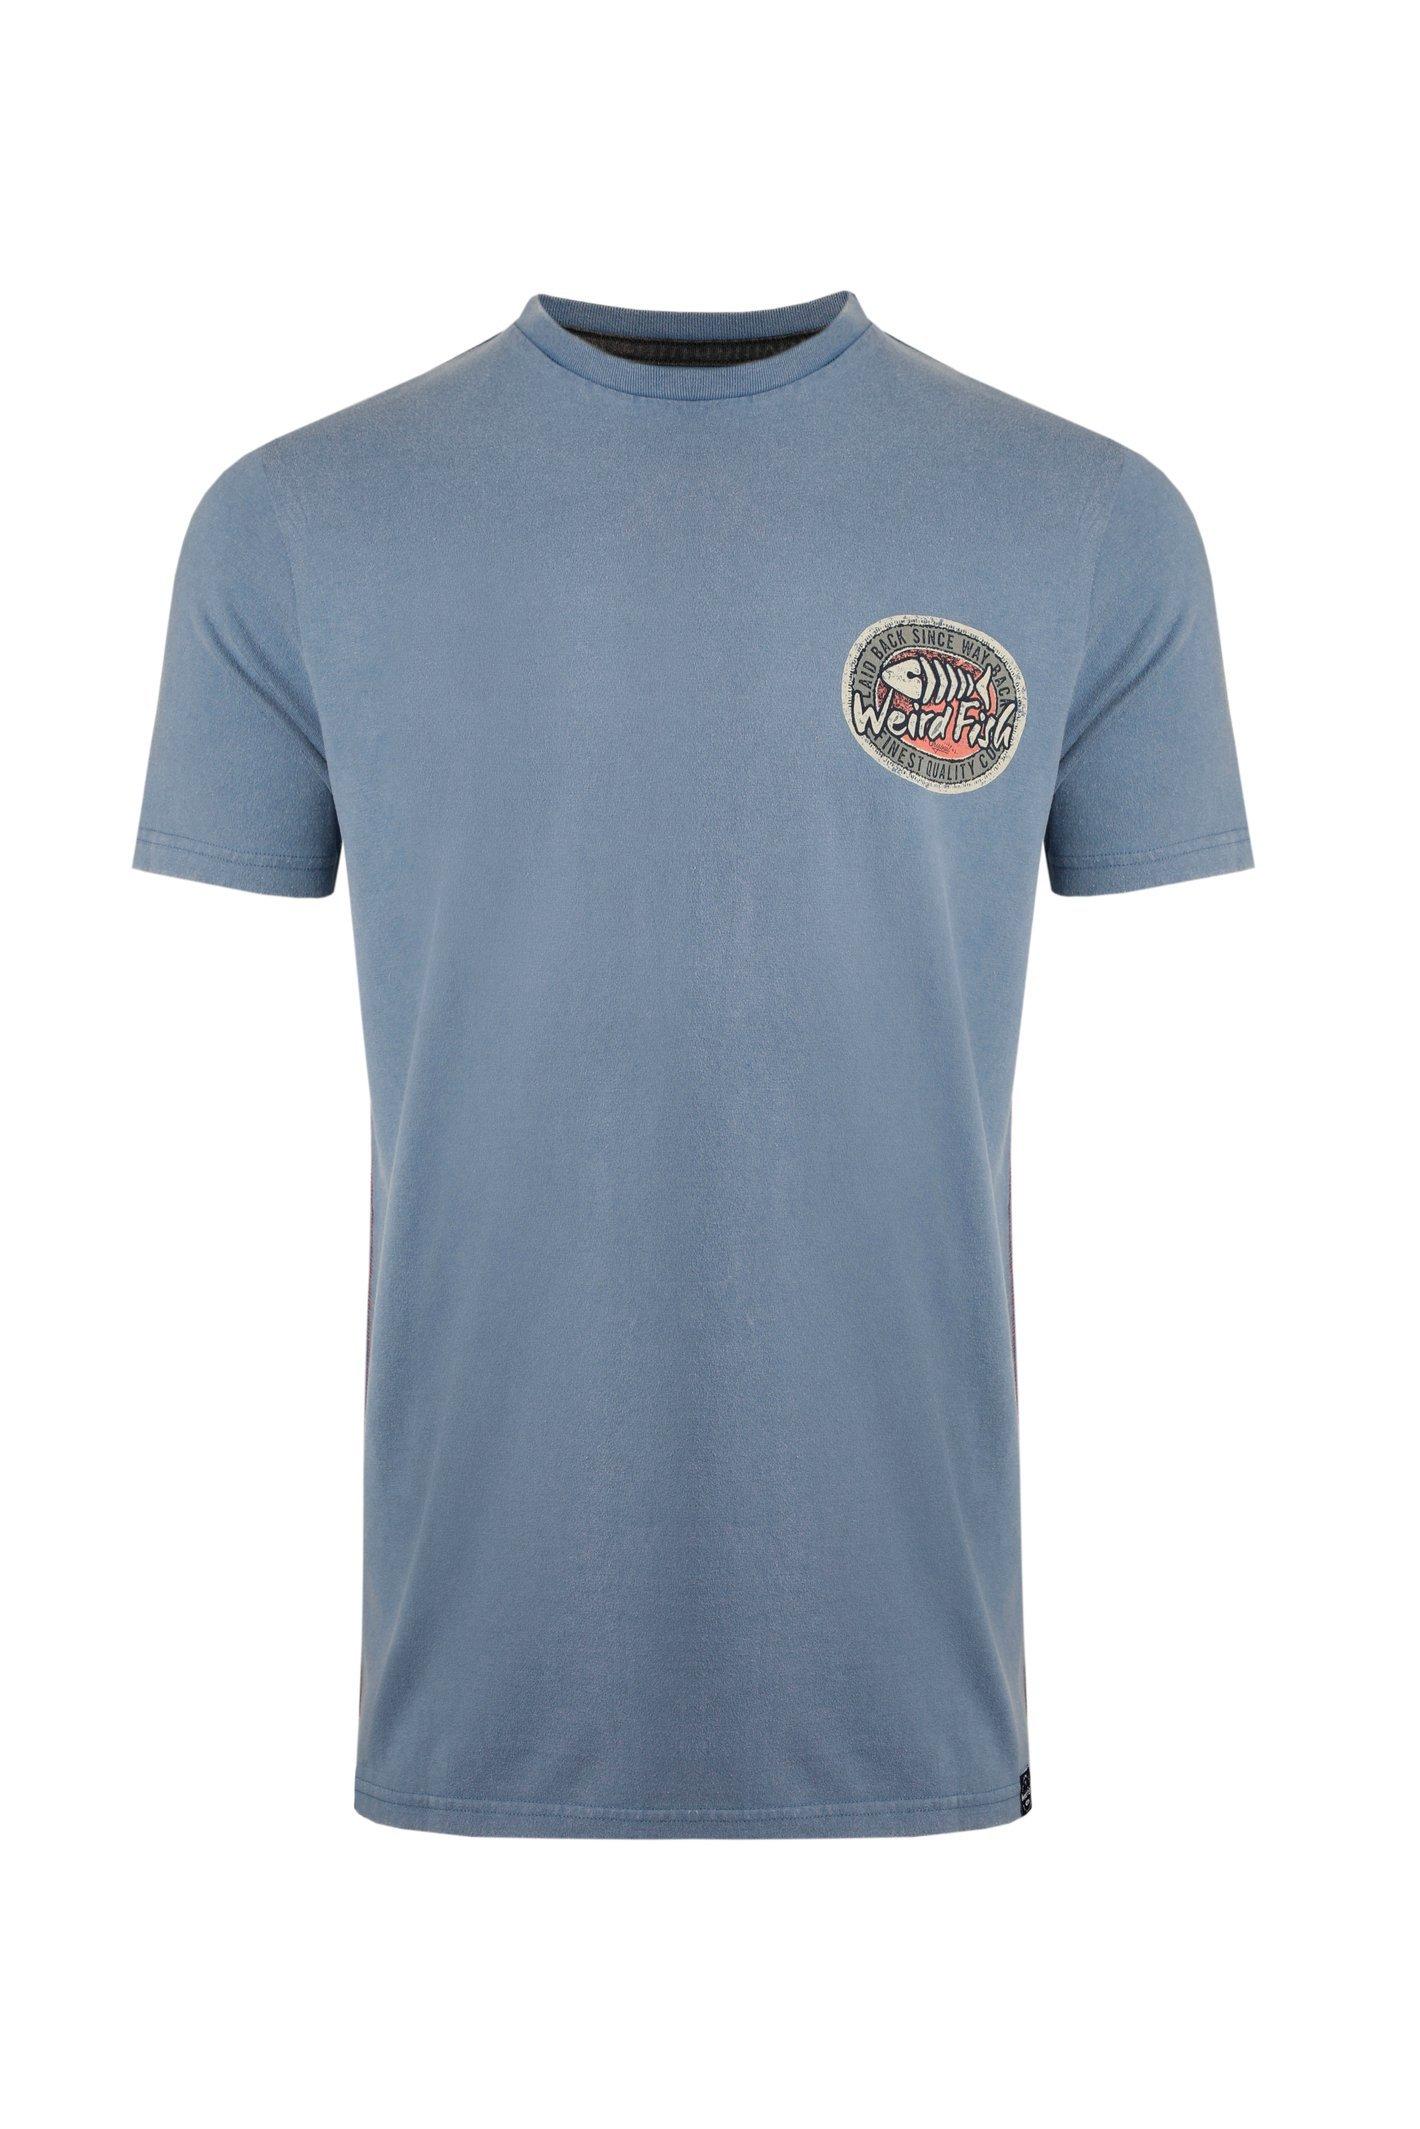 Непринужденная футболка с графическим принтом на спине Heritage Weird Fish, синий